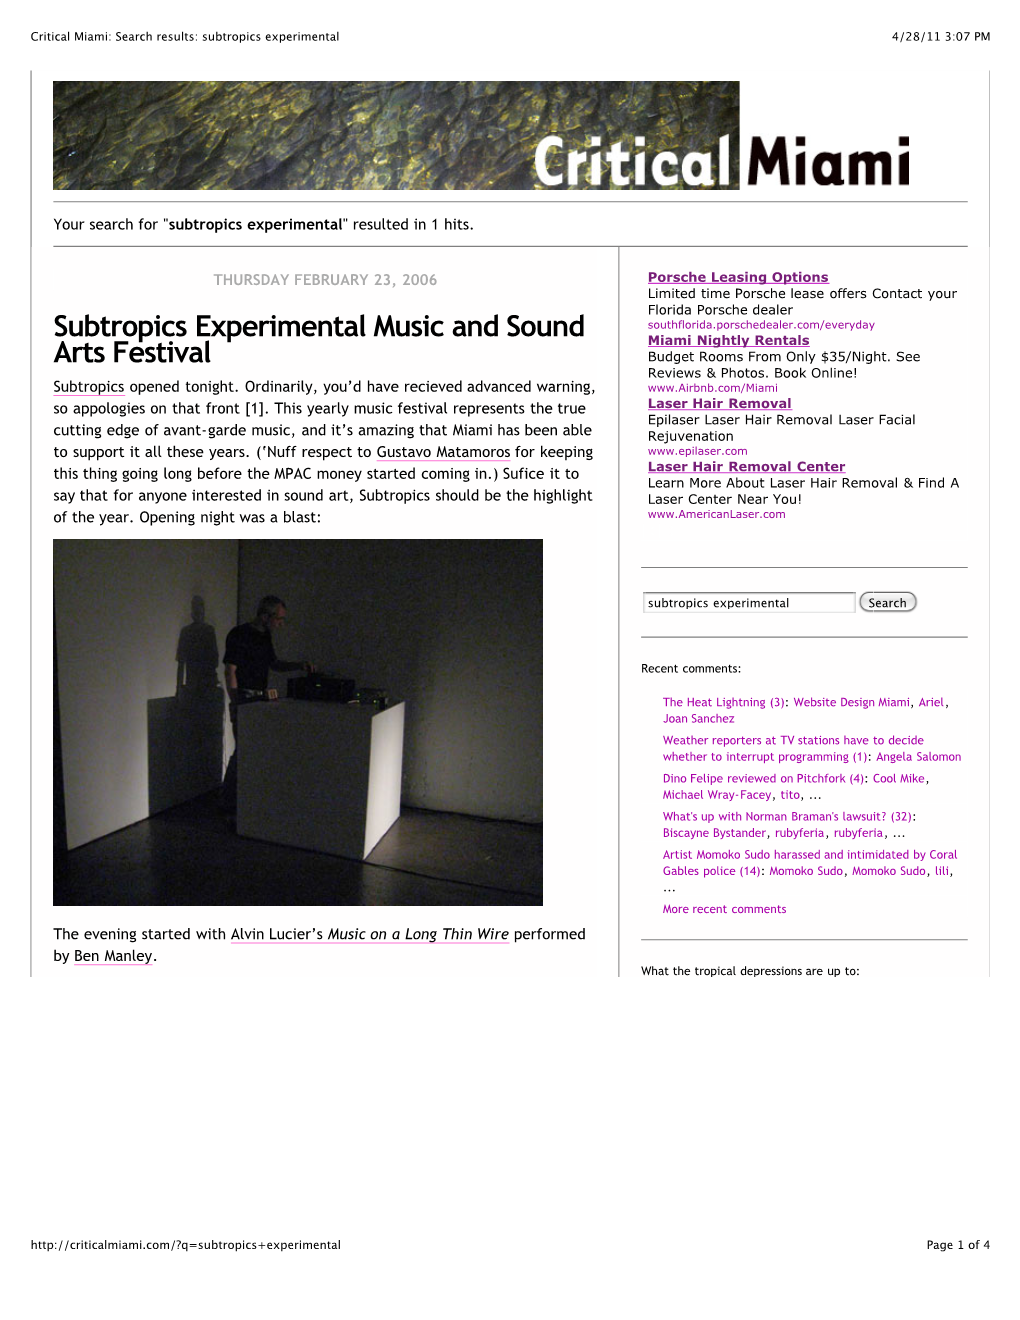 Critical Miami: Search Results: Subtropics Experimental 4/28/11 3:07 PM